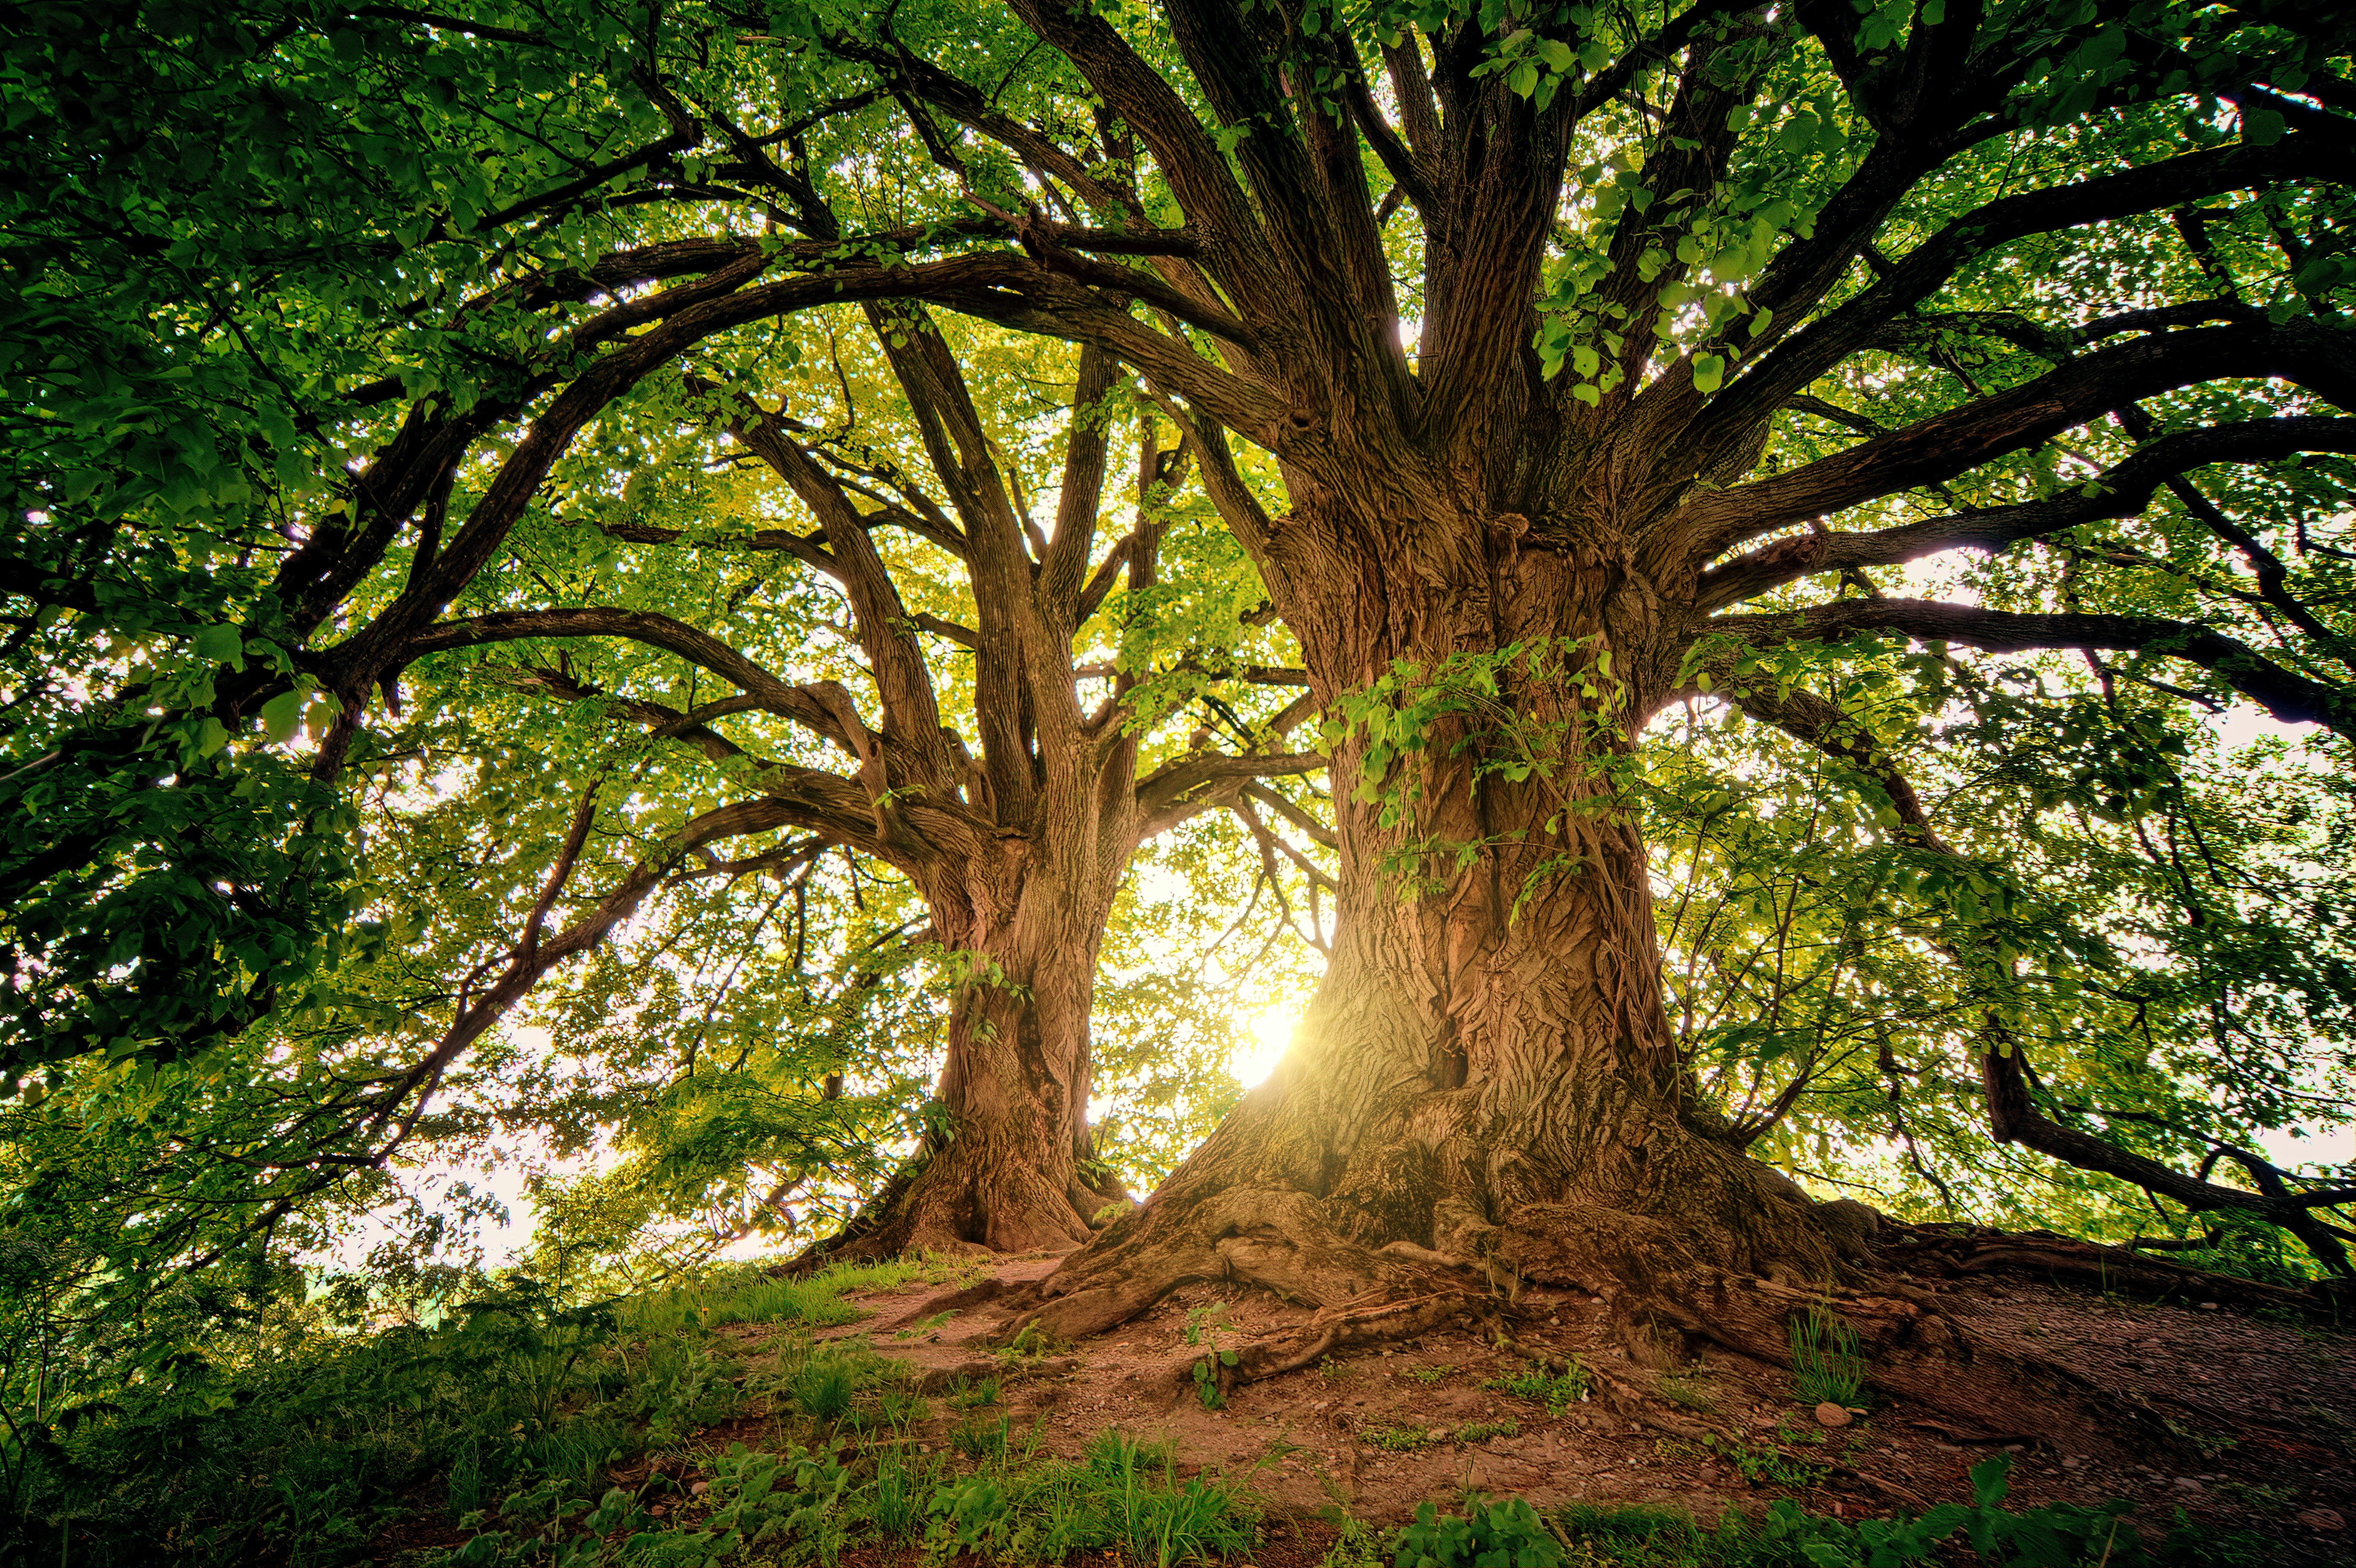 Magnifique arbre représentant la verticalité, notre être et notre connexion terre-ciel